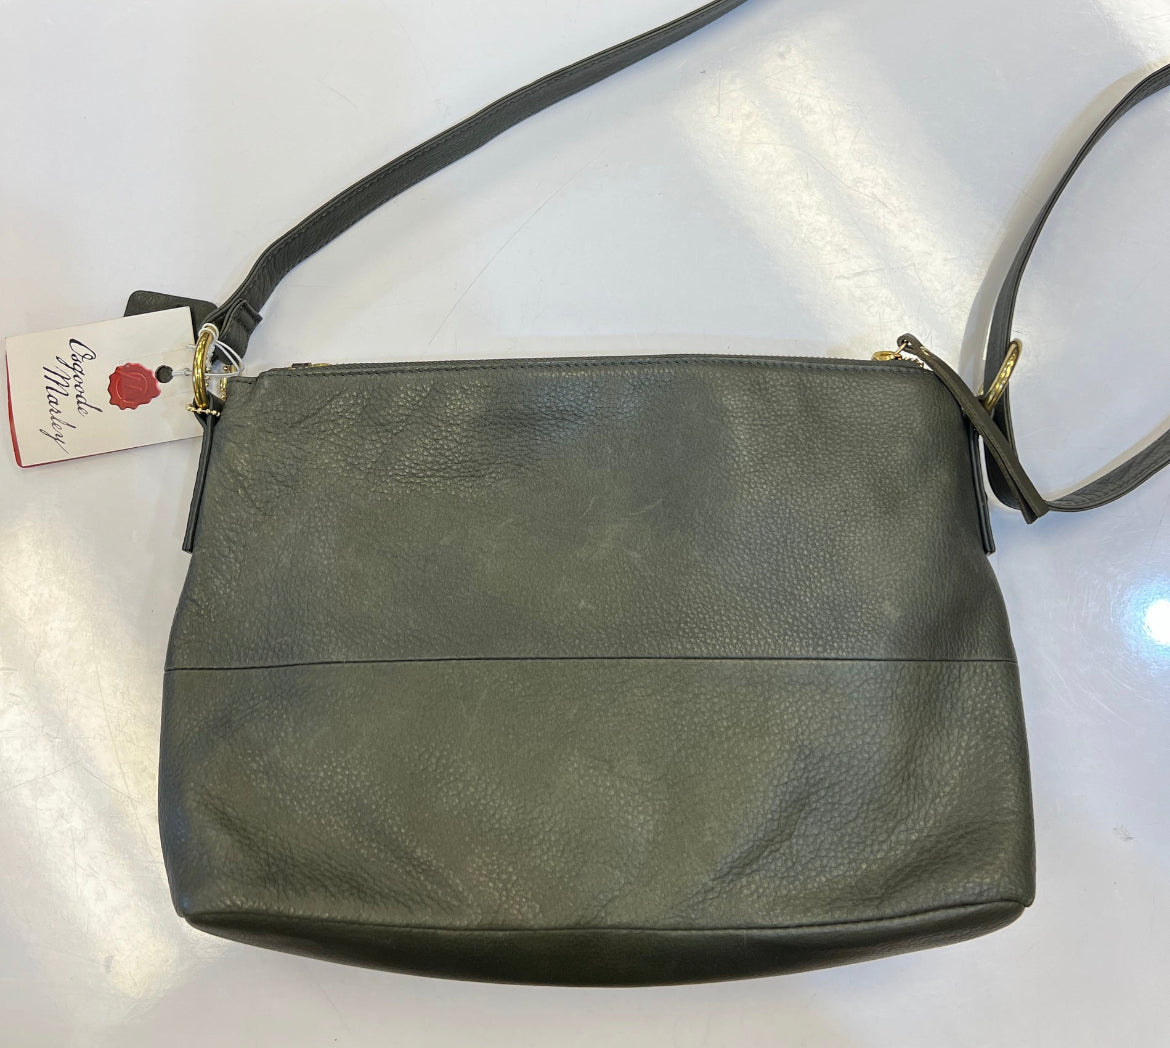 Osgoode Marley Double Zippered Leather Crossbody Handbag